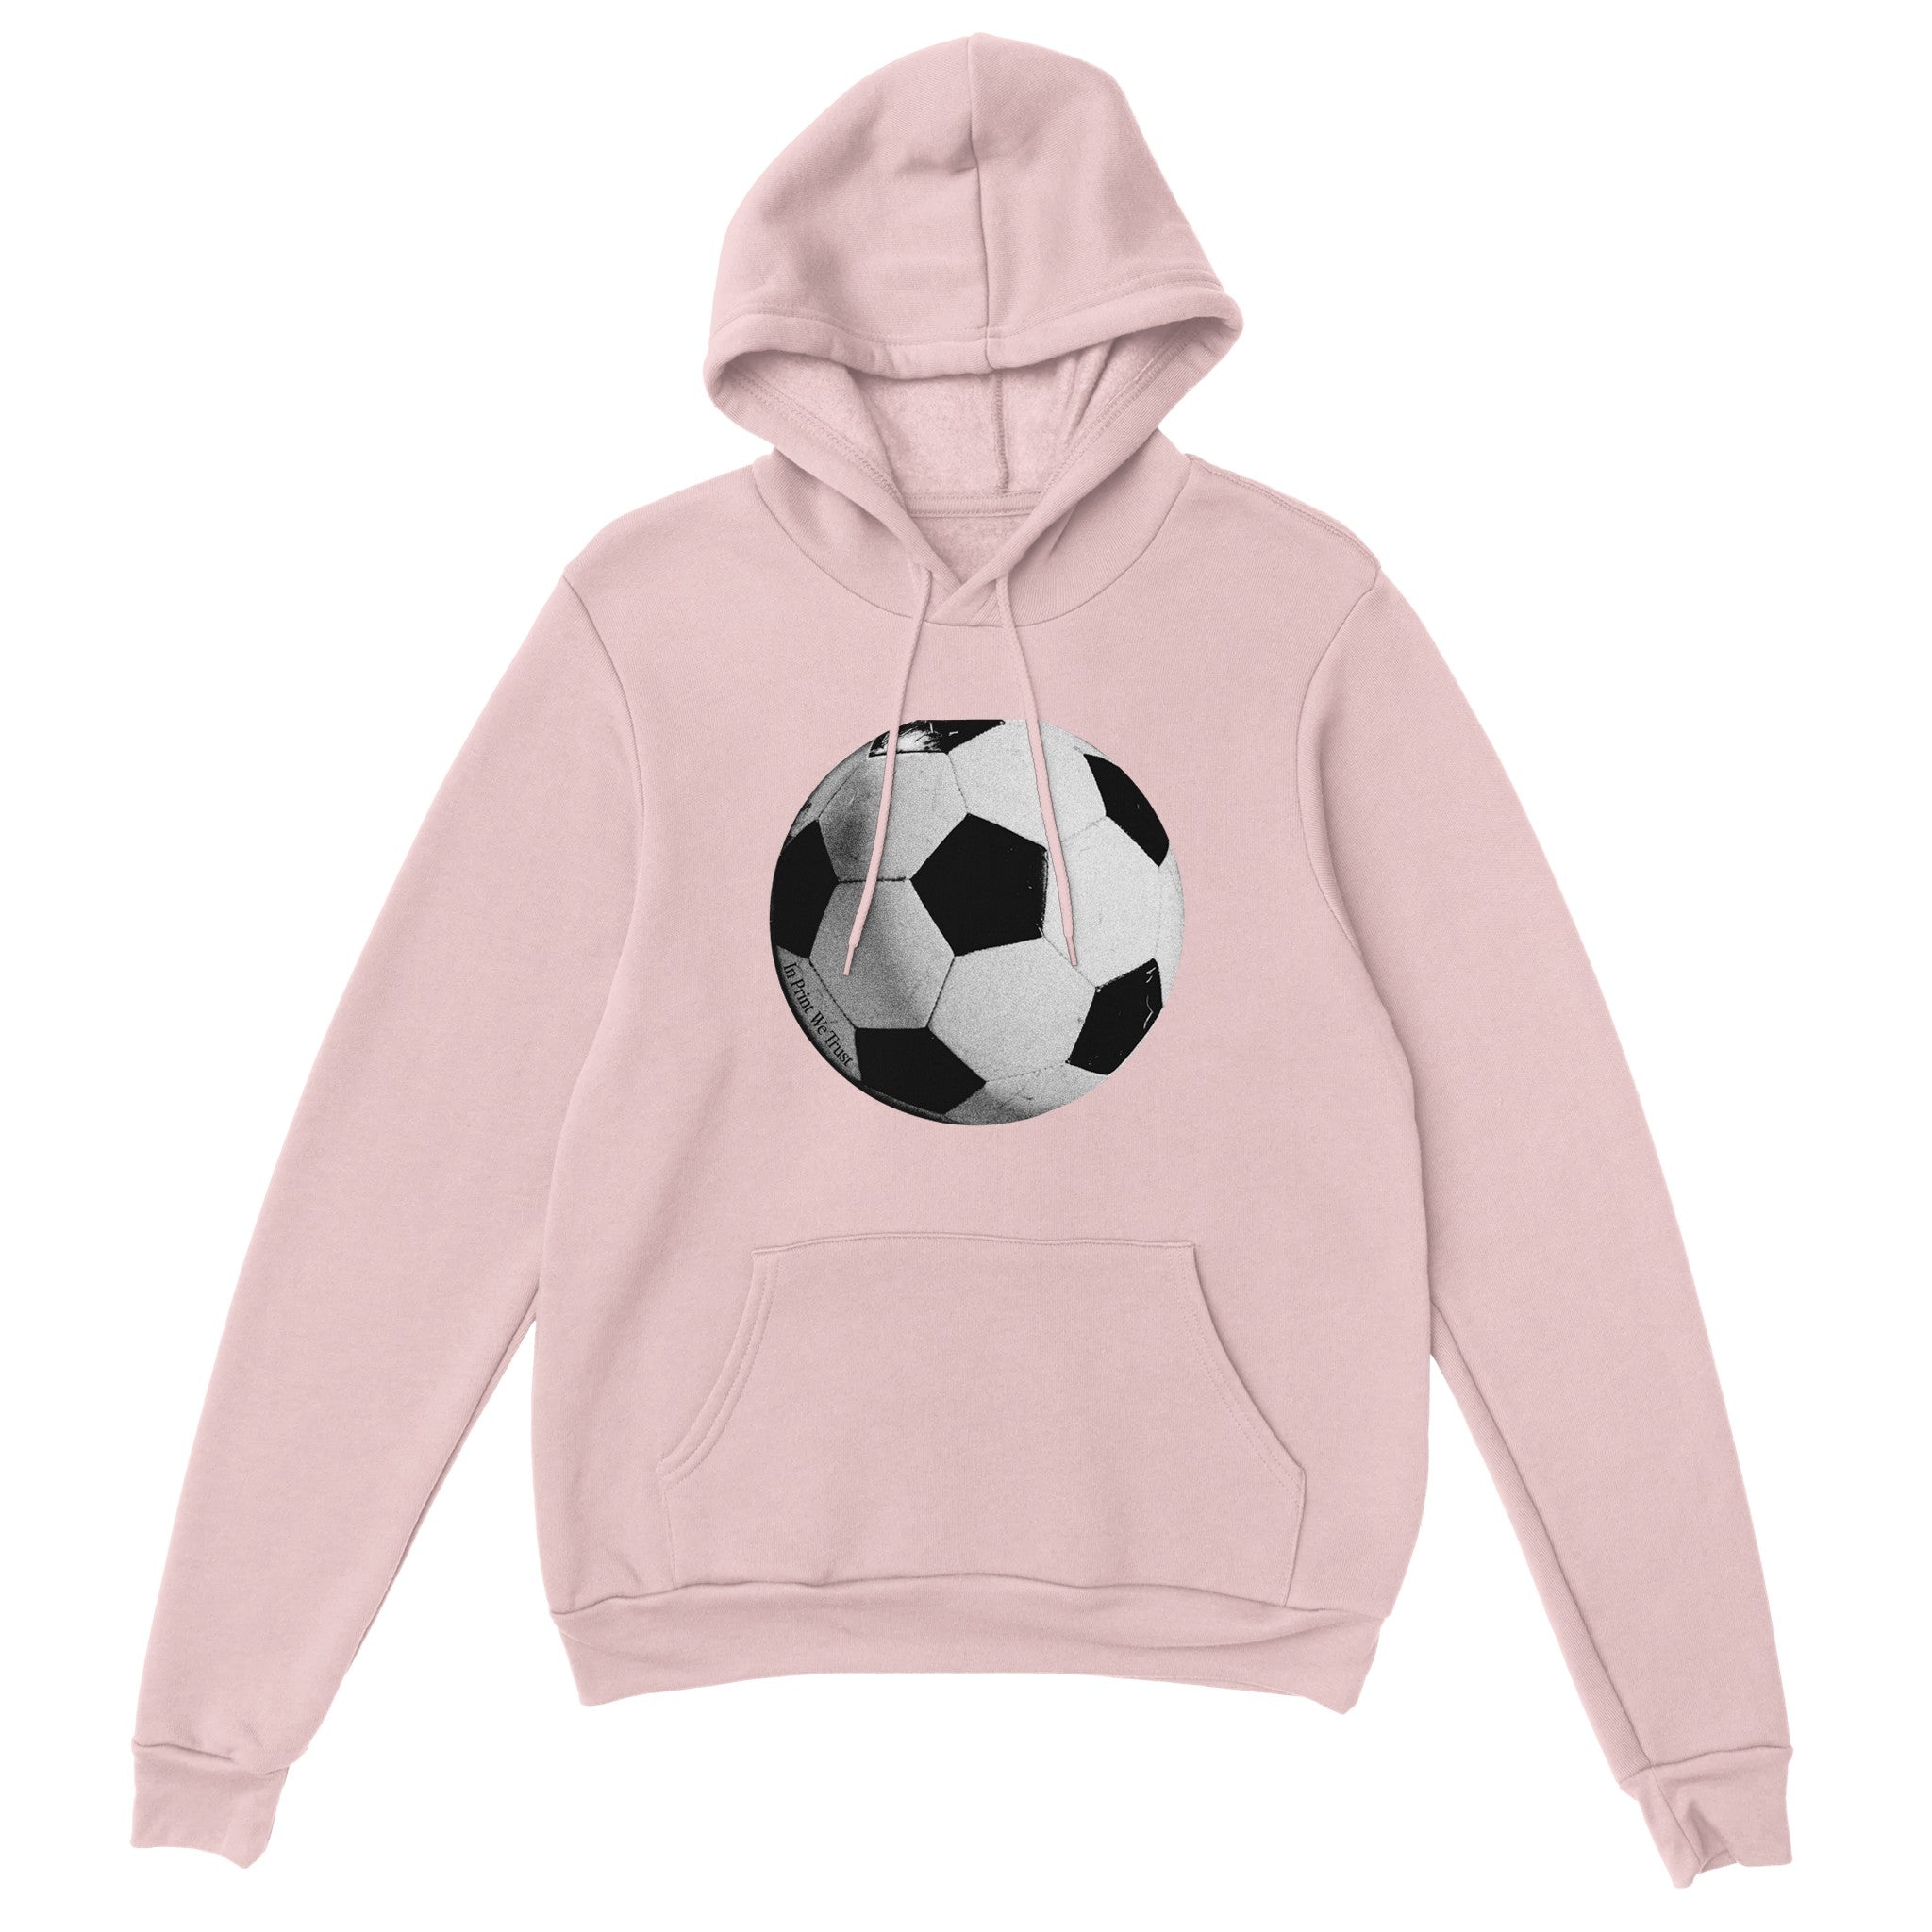 'Football' hoodie - In Print We Trust